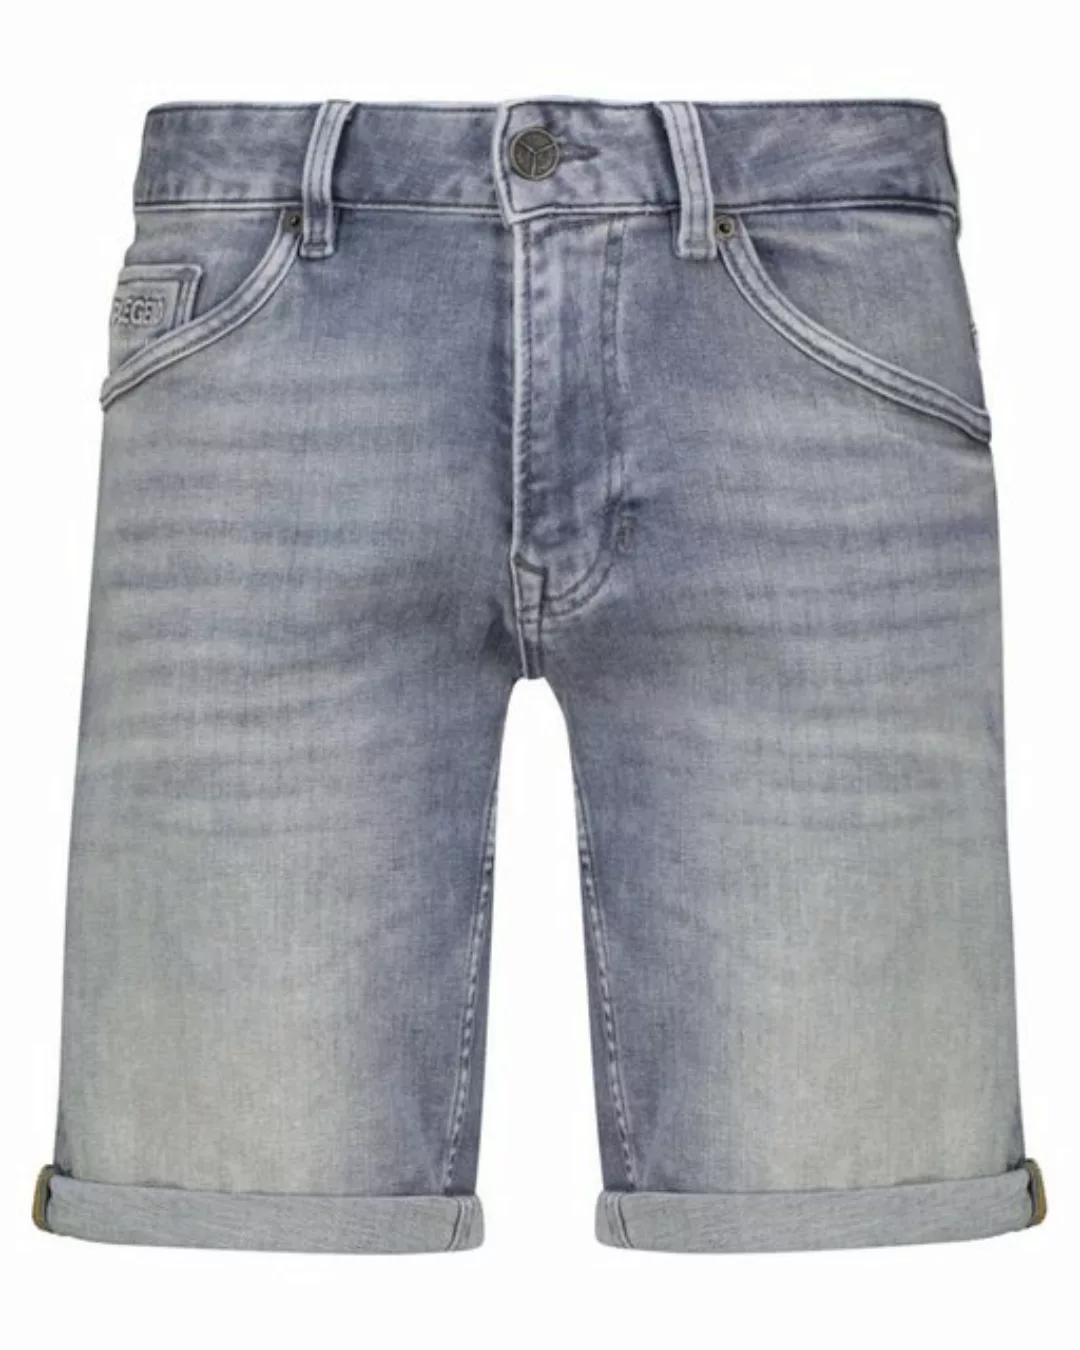 PME Legend Herren Jeans Short NIGHTFLIGHT - Regular Fit - Blau - Grau günstig online kaufen